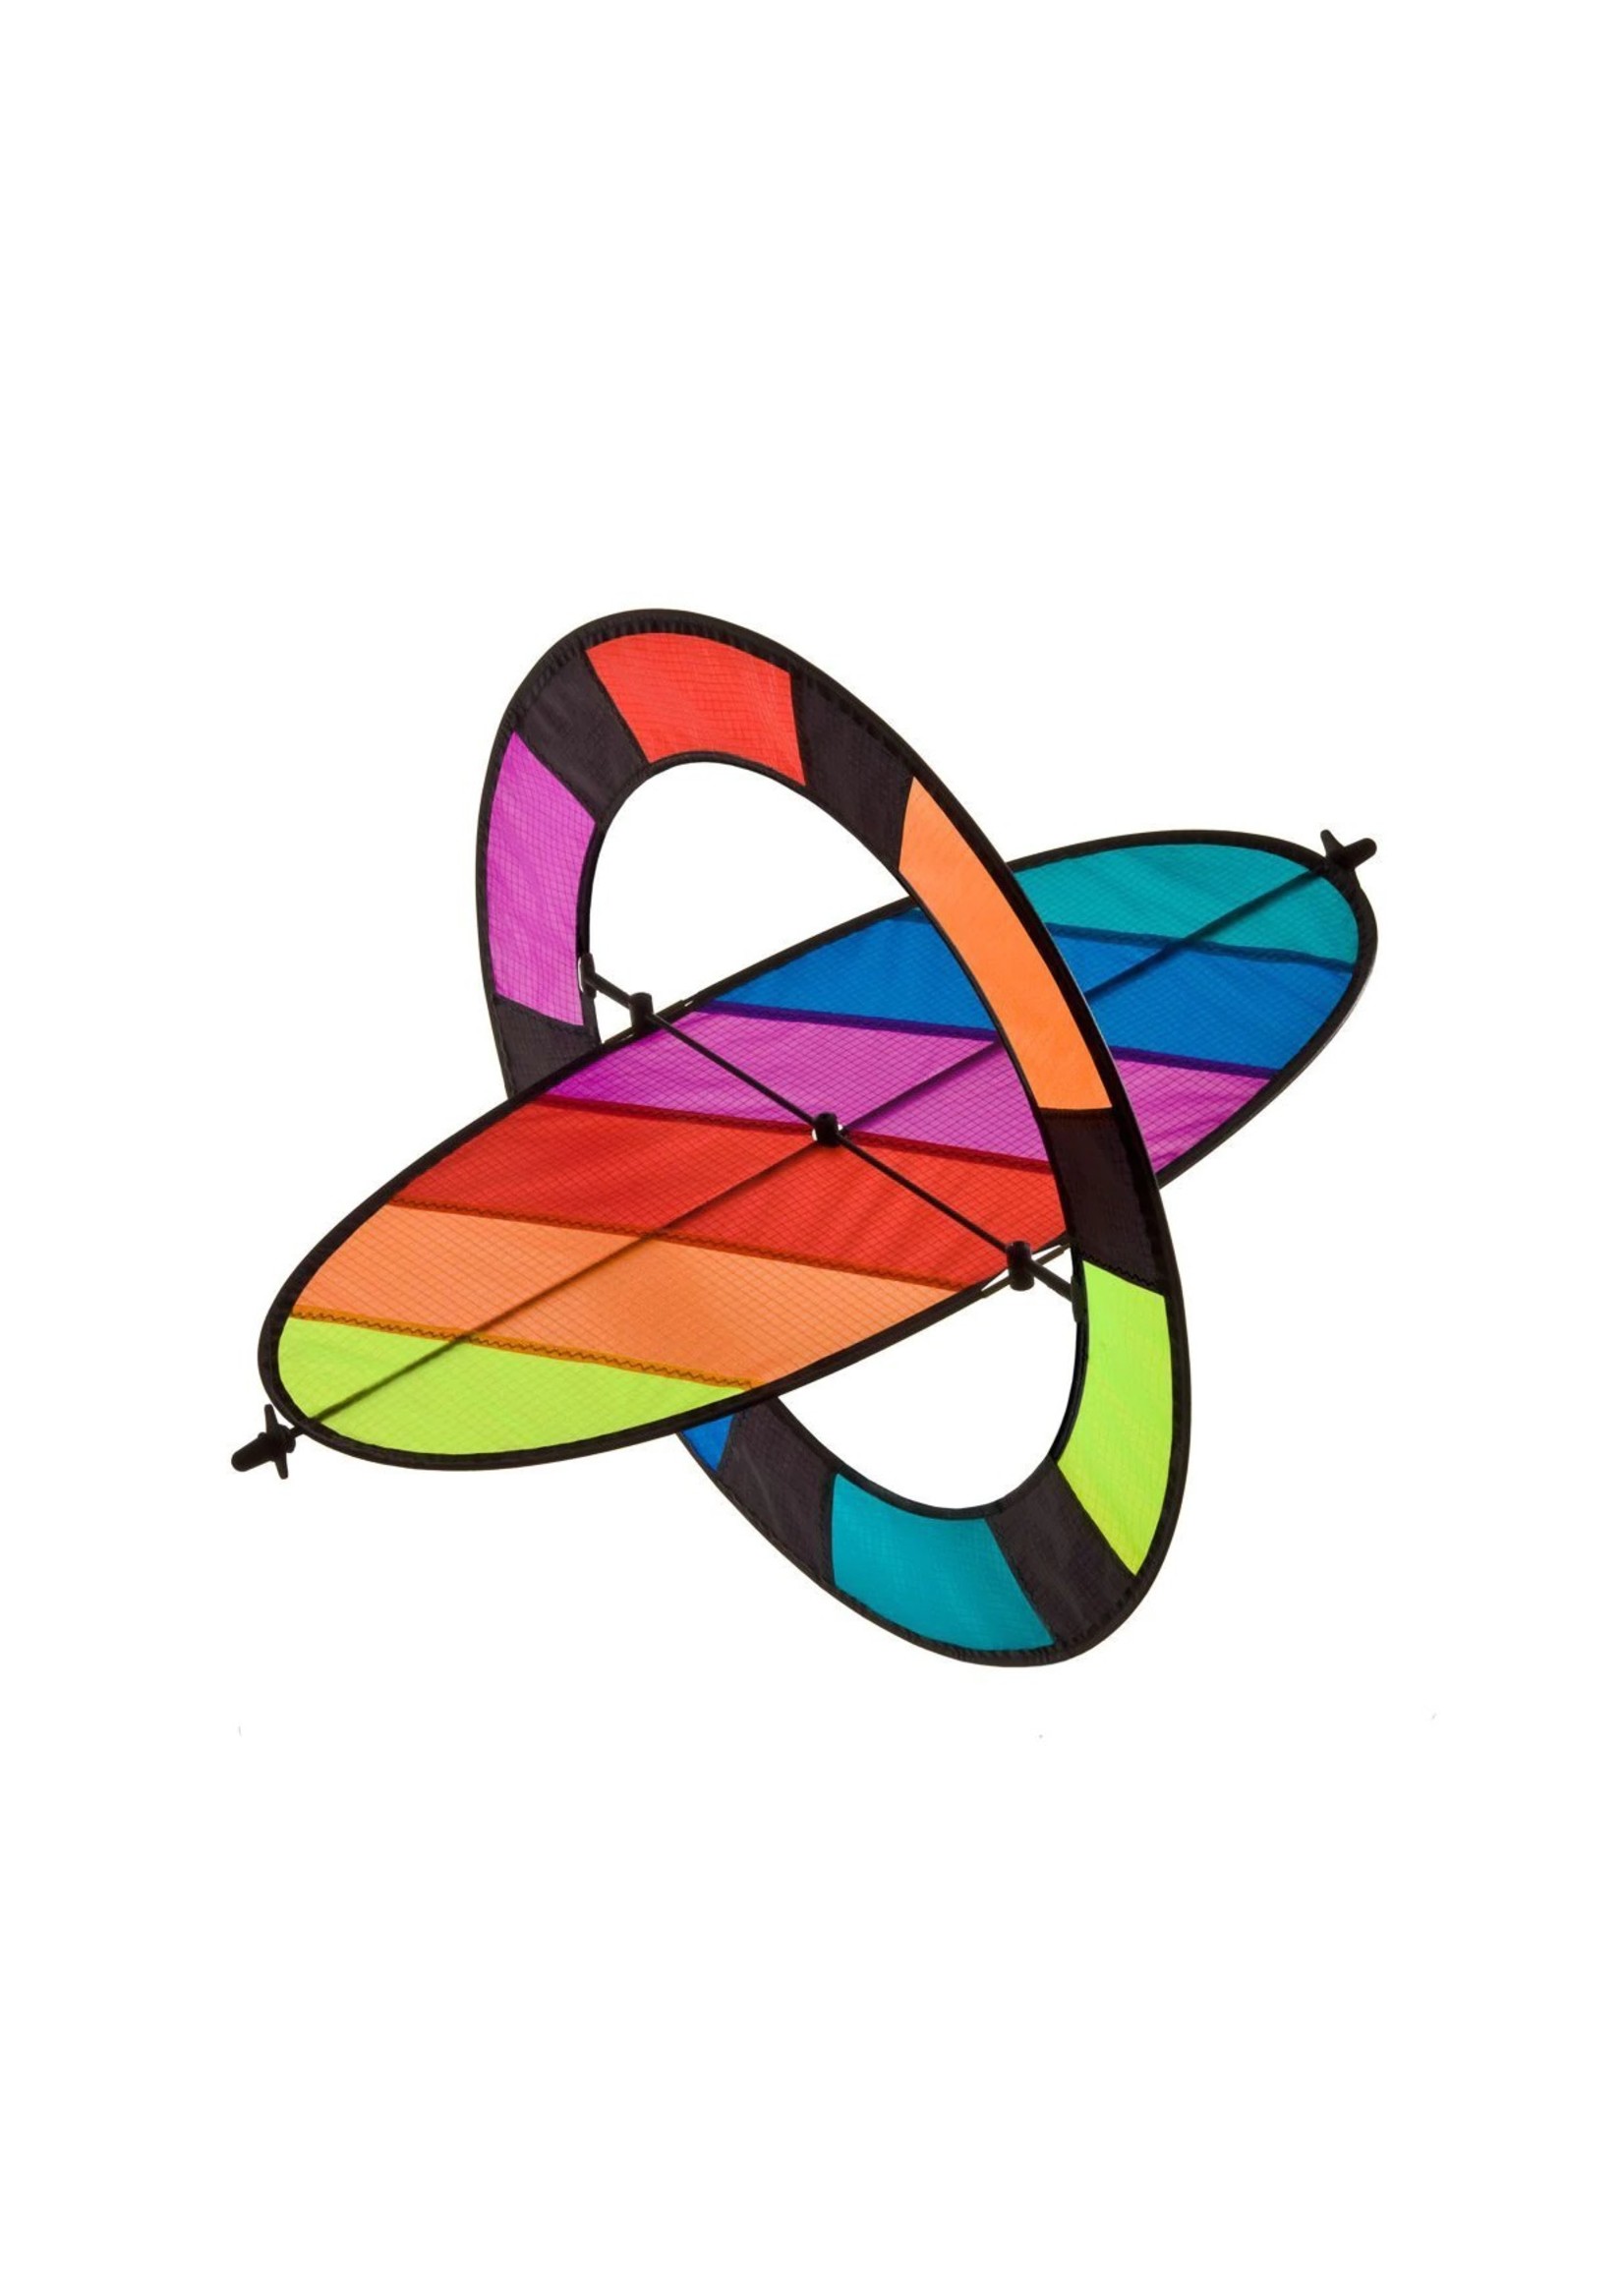 Prism Flip Spectrum - Single Line Kite